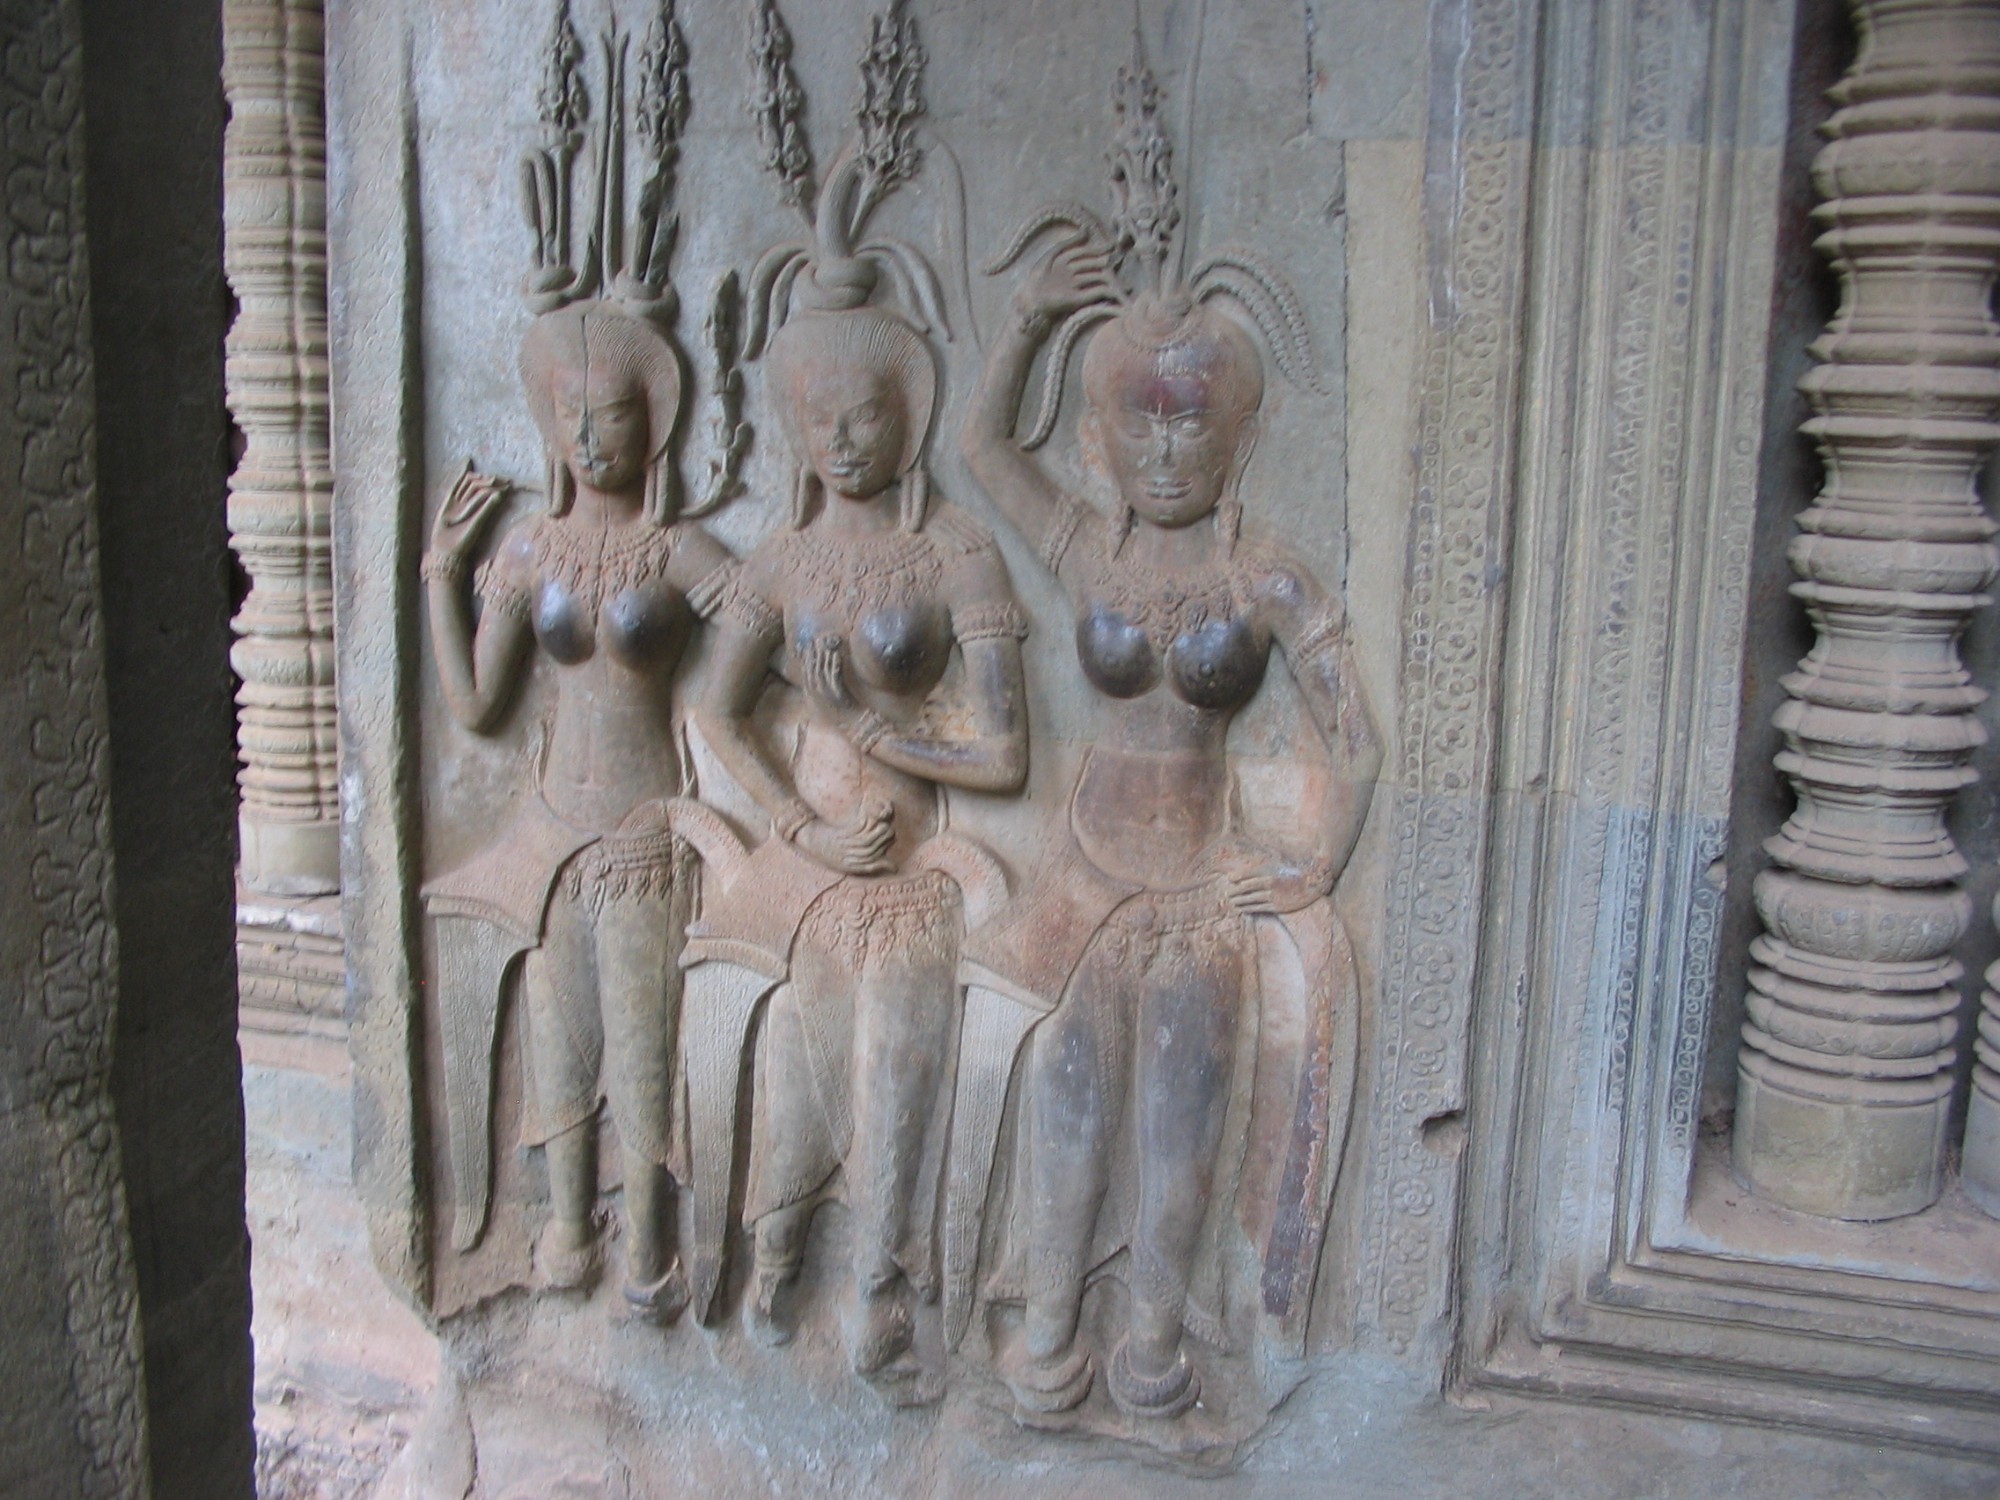 Ангкор-Ват.